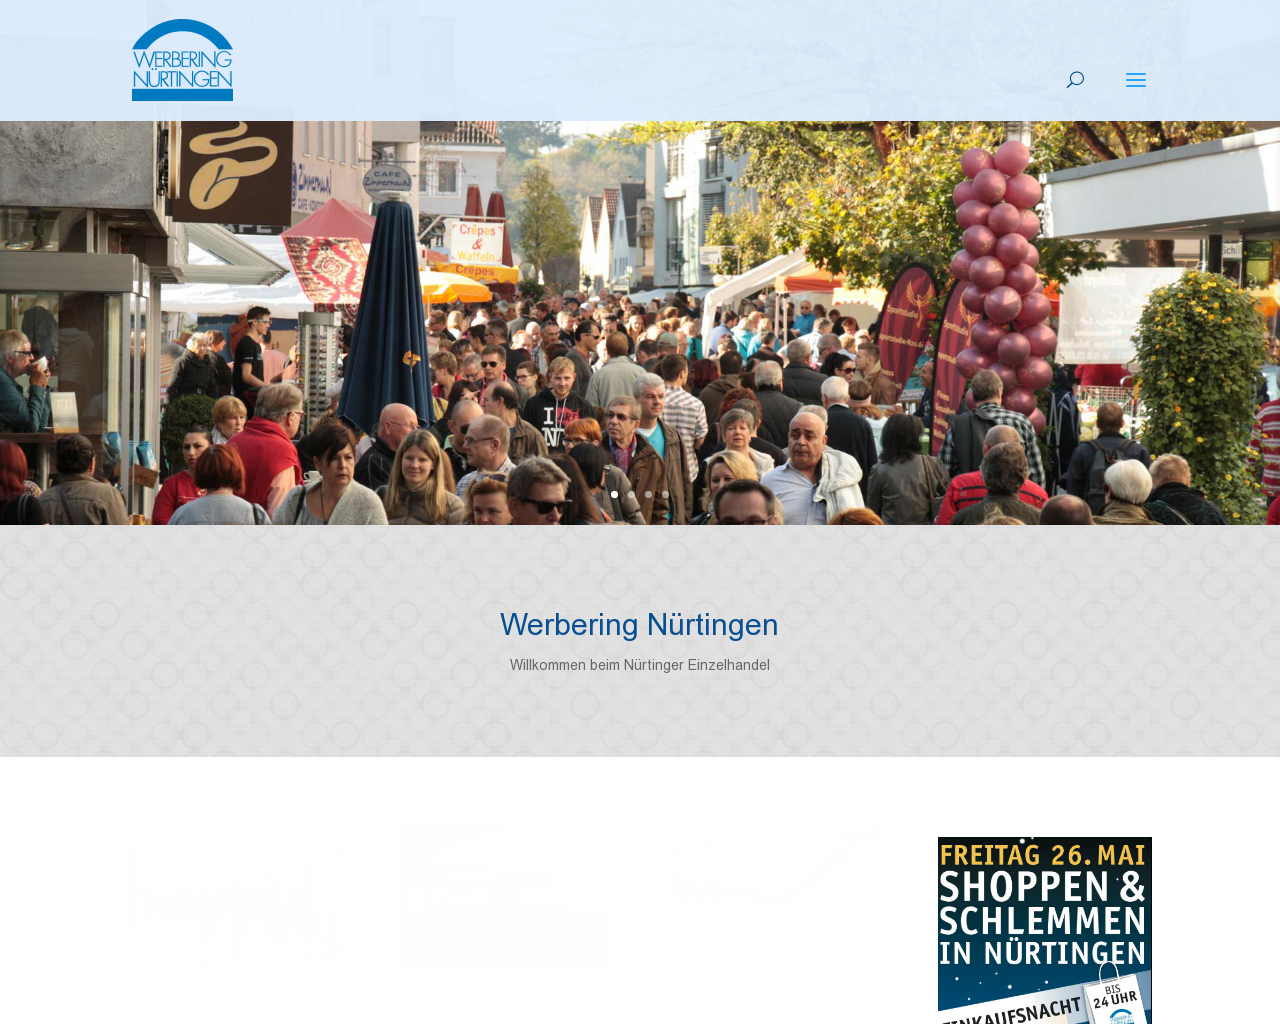 Bild Website werbering-nuertingen.de in 1280x1024